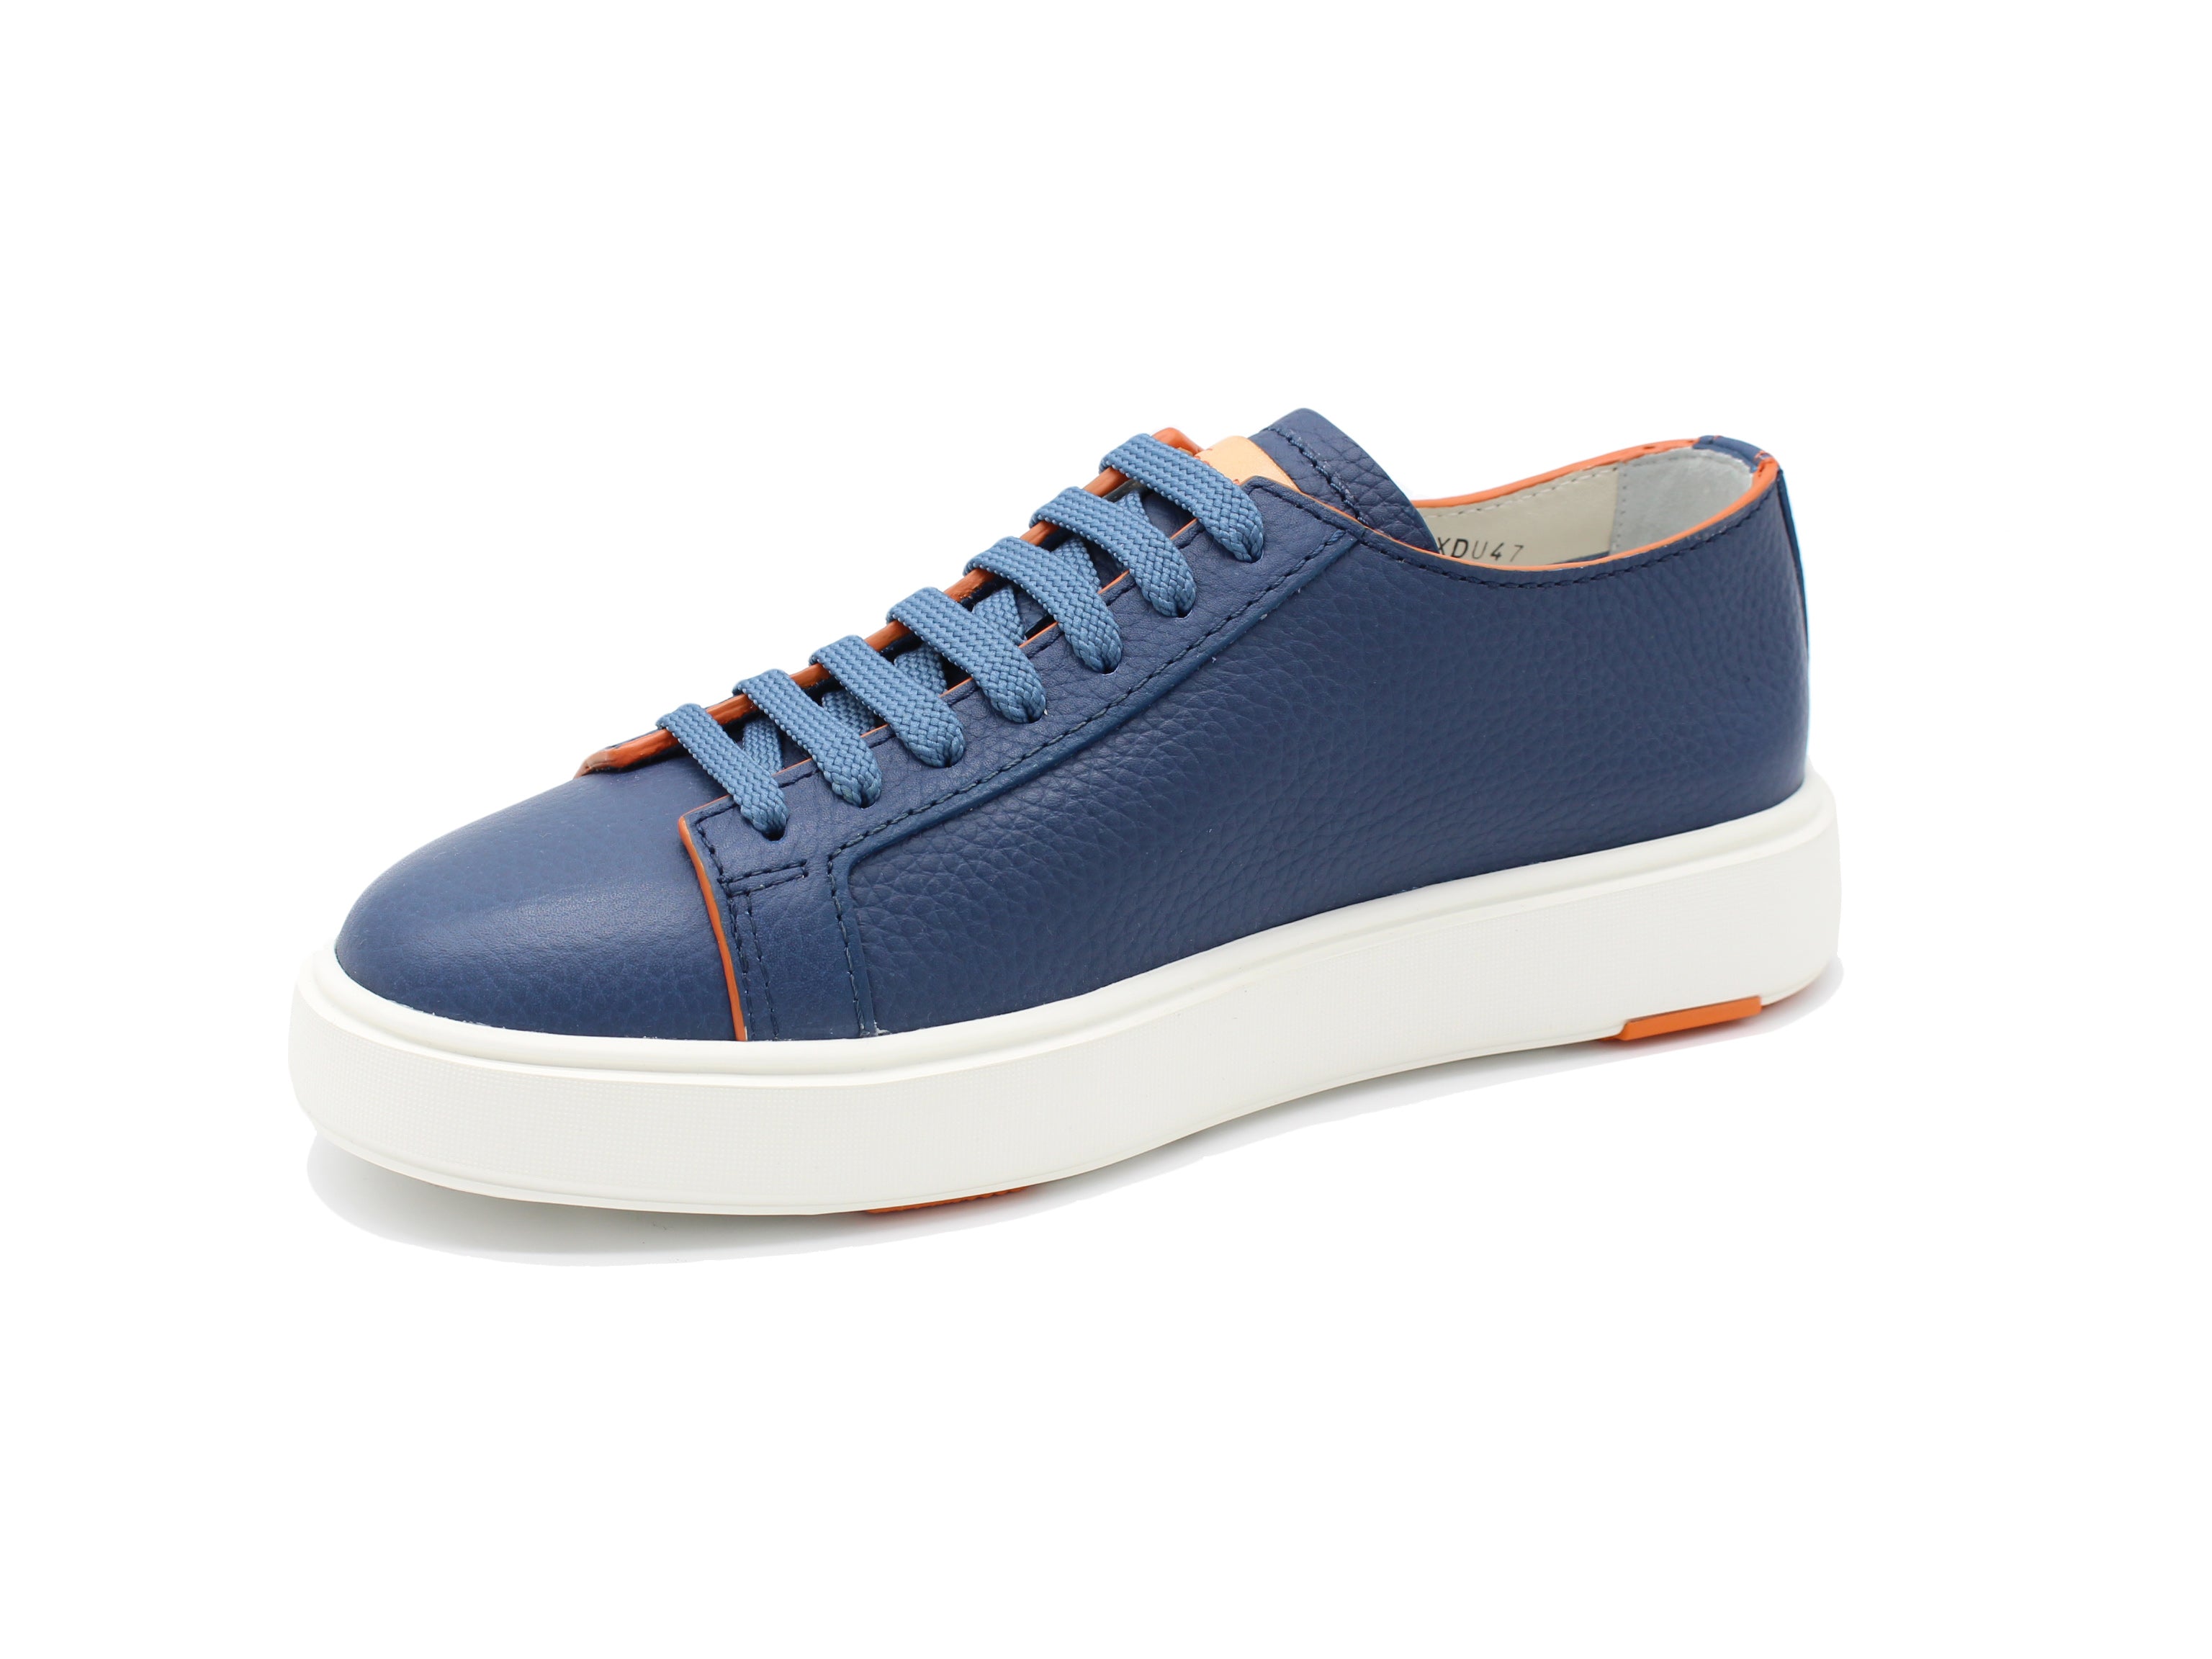 MBCD21574BARCMXDU47 blue sneaker